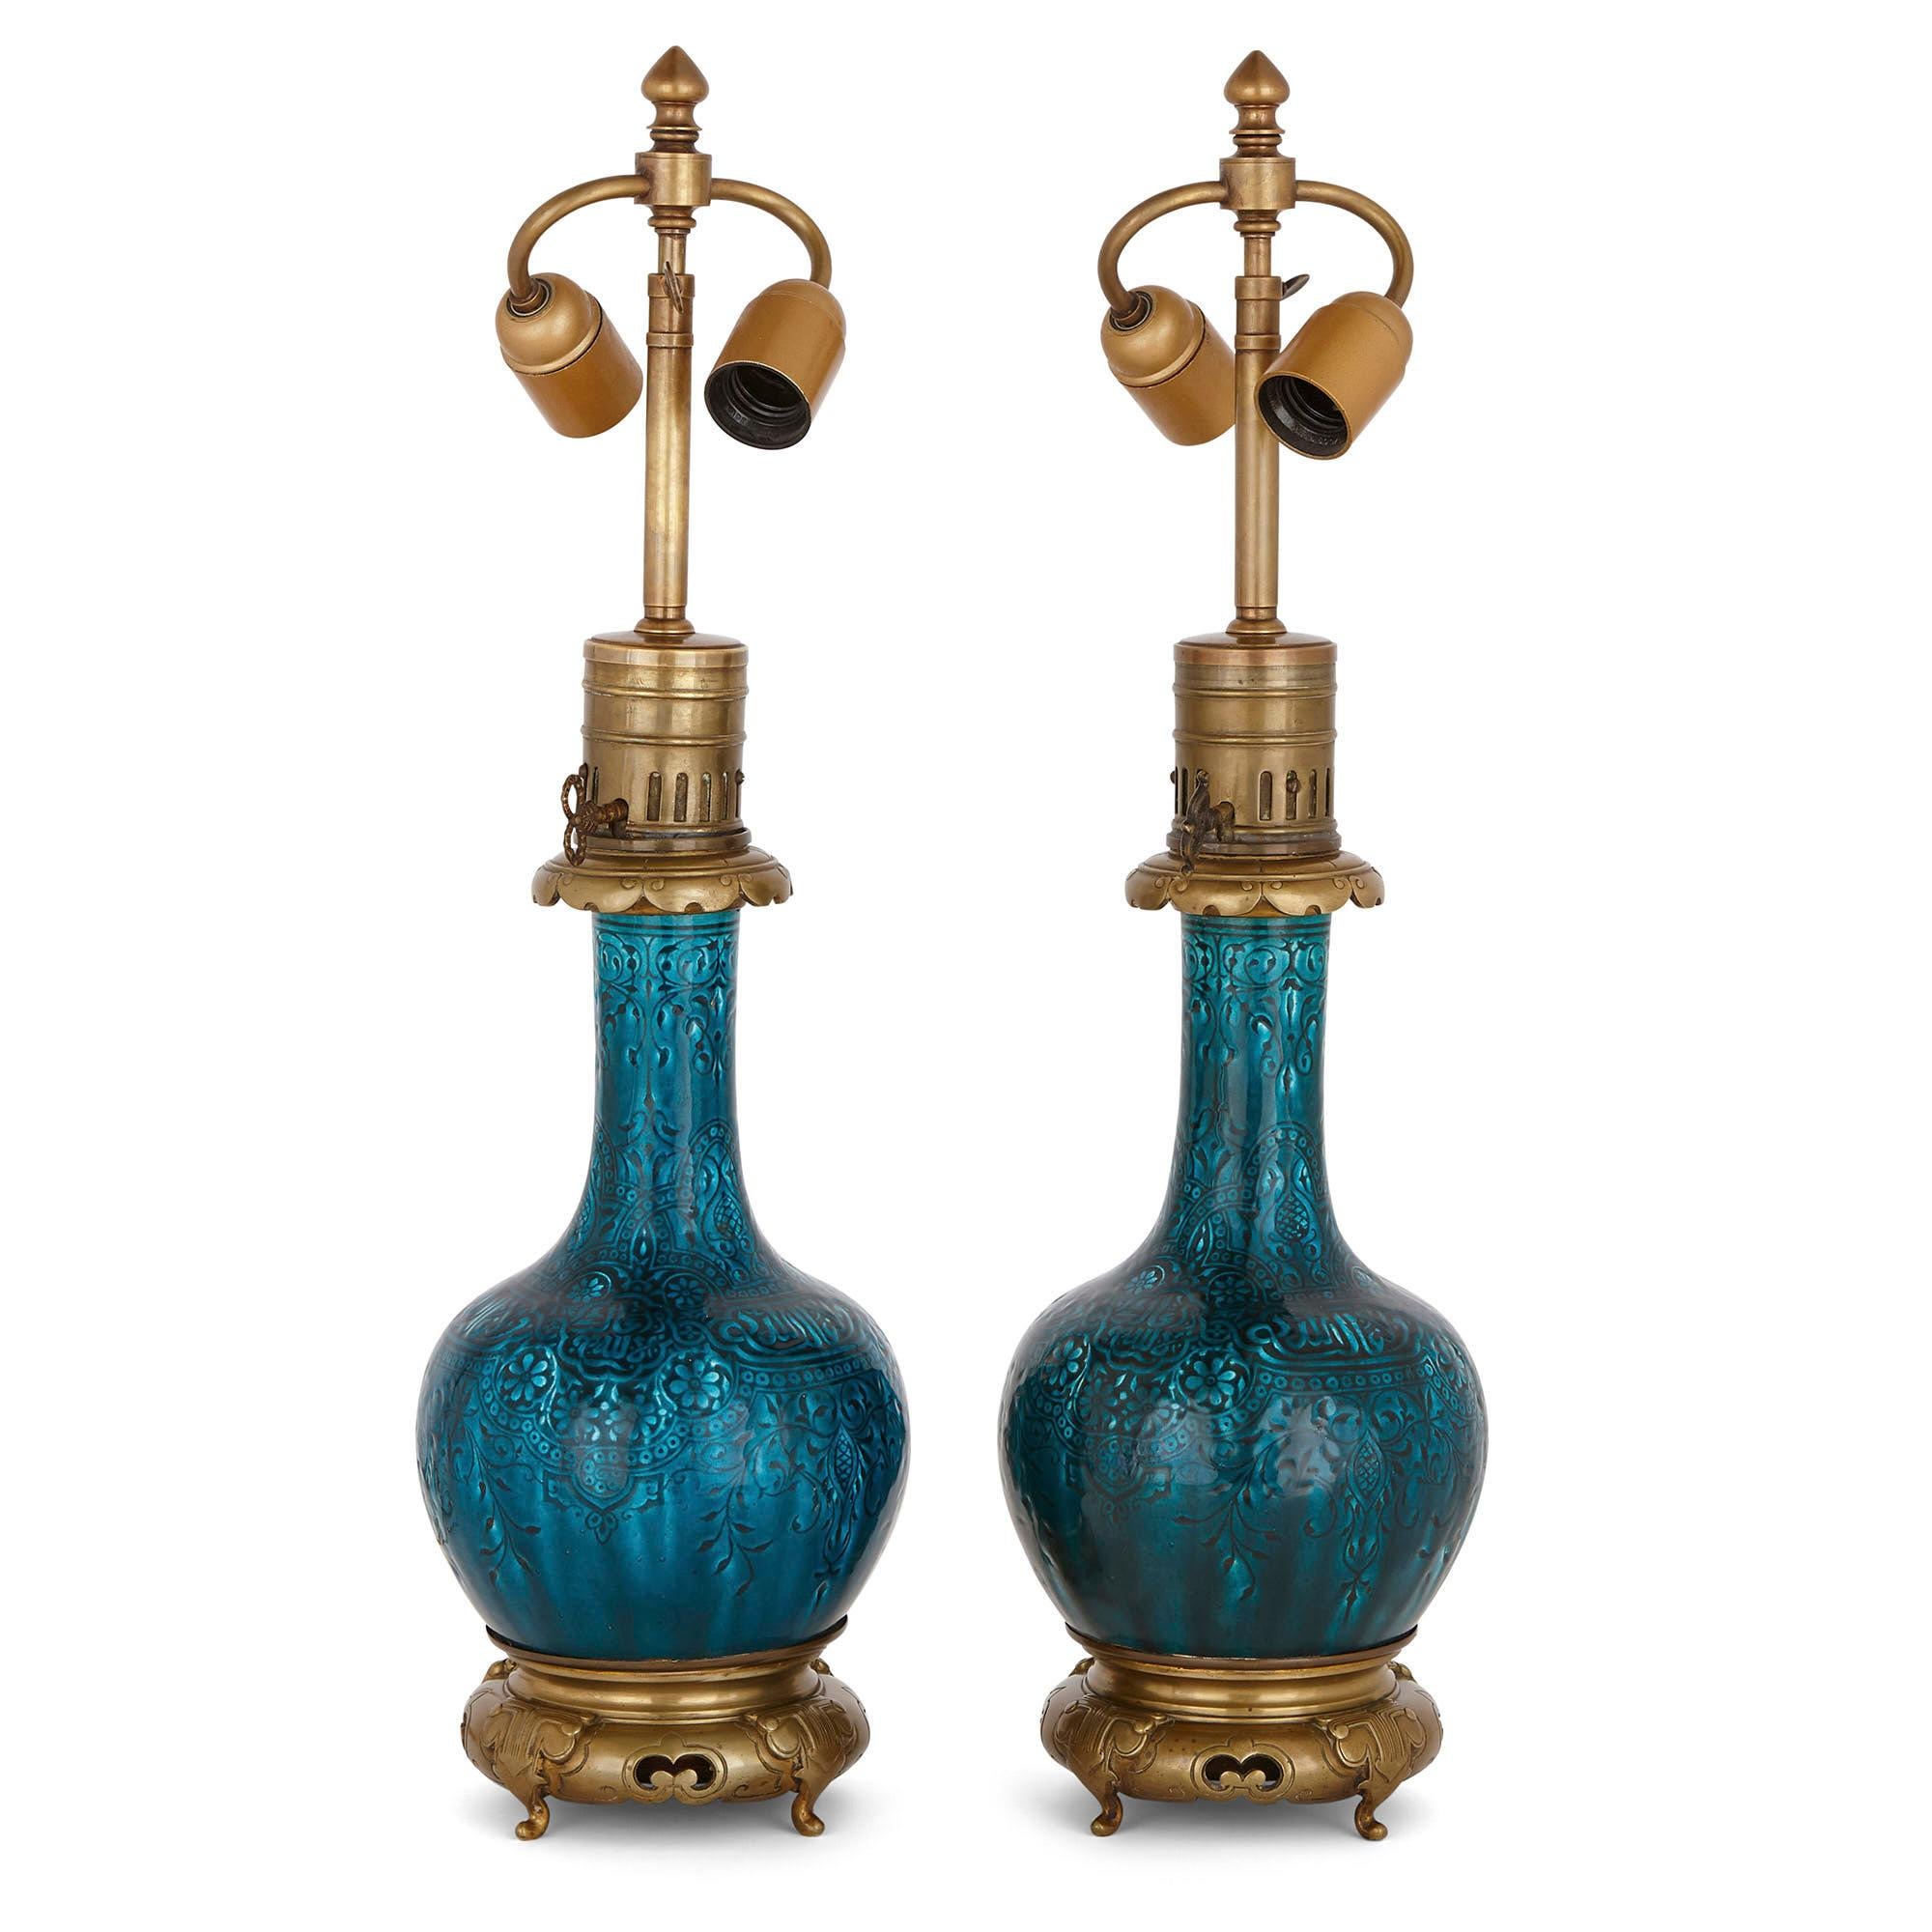 Ces magnifiques lampes de table ont été attribuées à Joseph-Théodore Deck, l'un des plus importants céramistes du XIXe siècle. Deck était le directeur d'un prestigieux atelier de faïence basé en France. Il était réputé pour ses objets en céramique